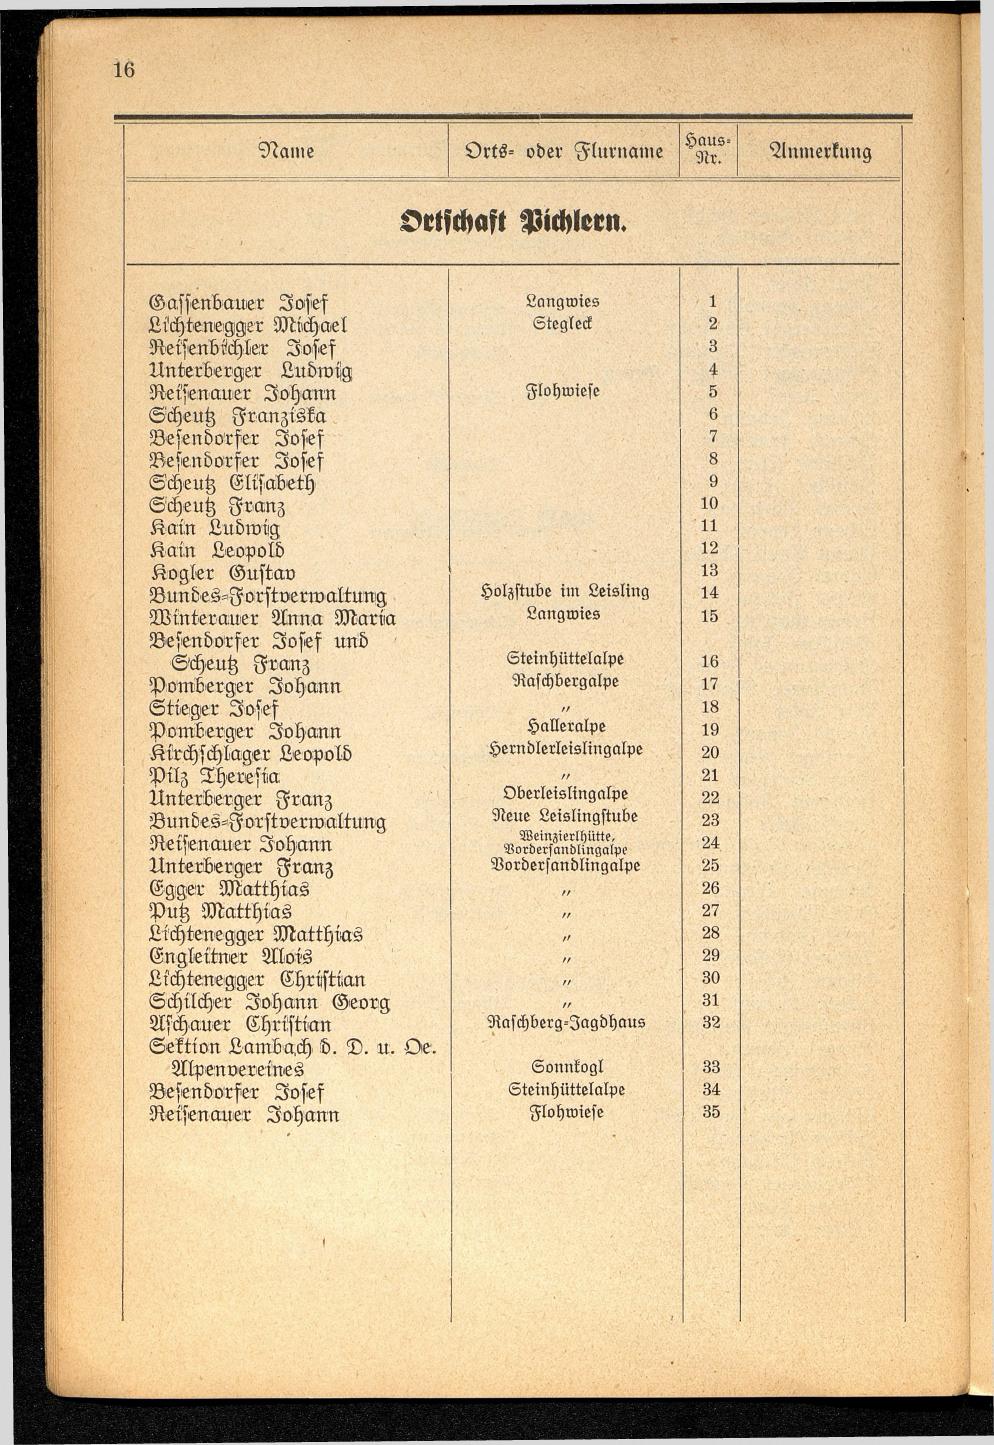 Häuser-Verzeichnis der Gemeinde Goisern nach dem Stande von November 1937 - Seite 18